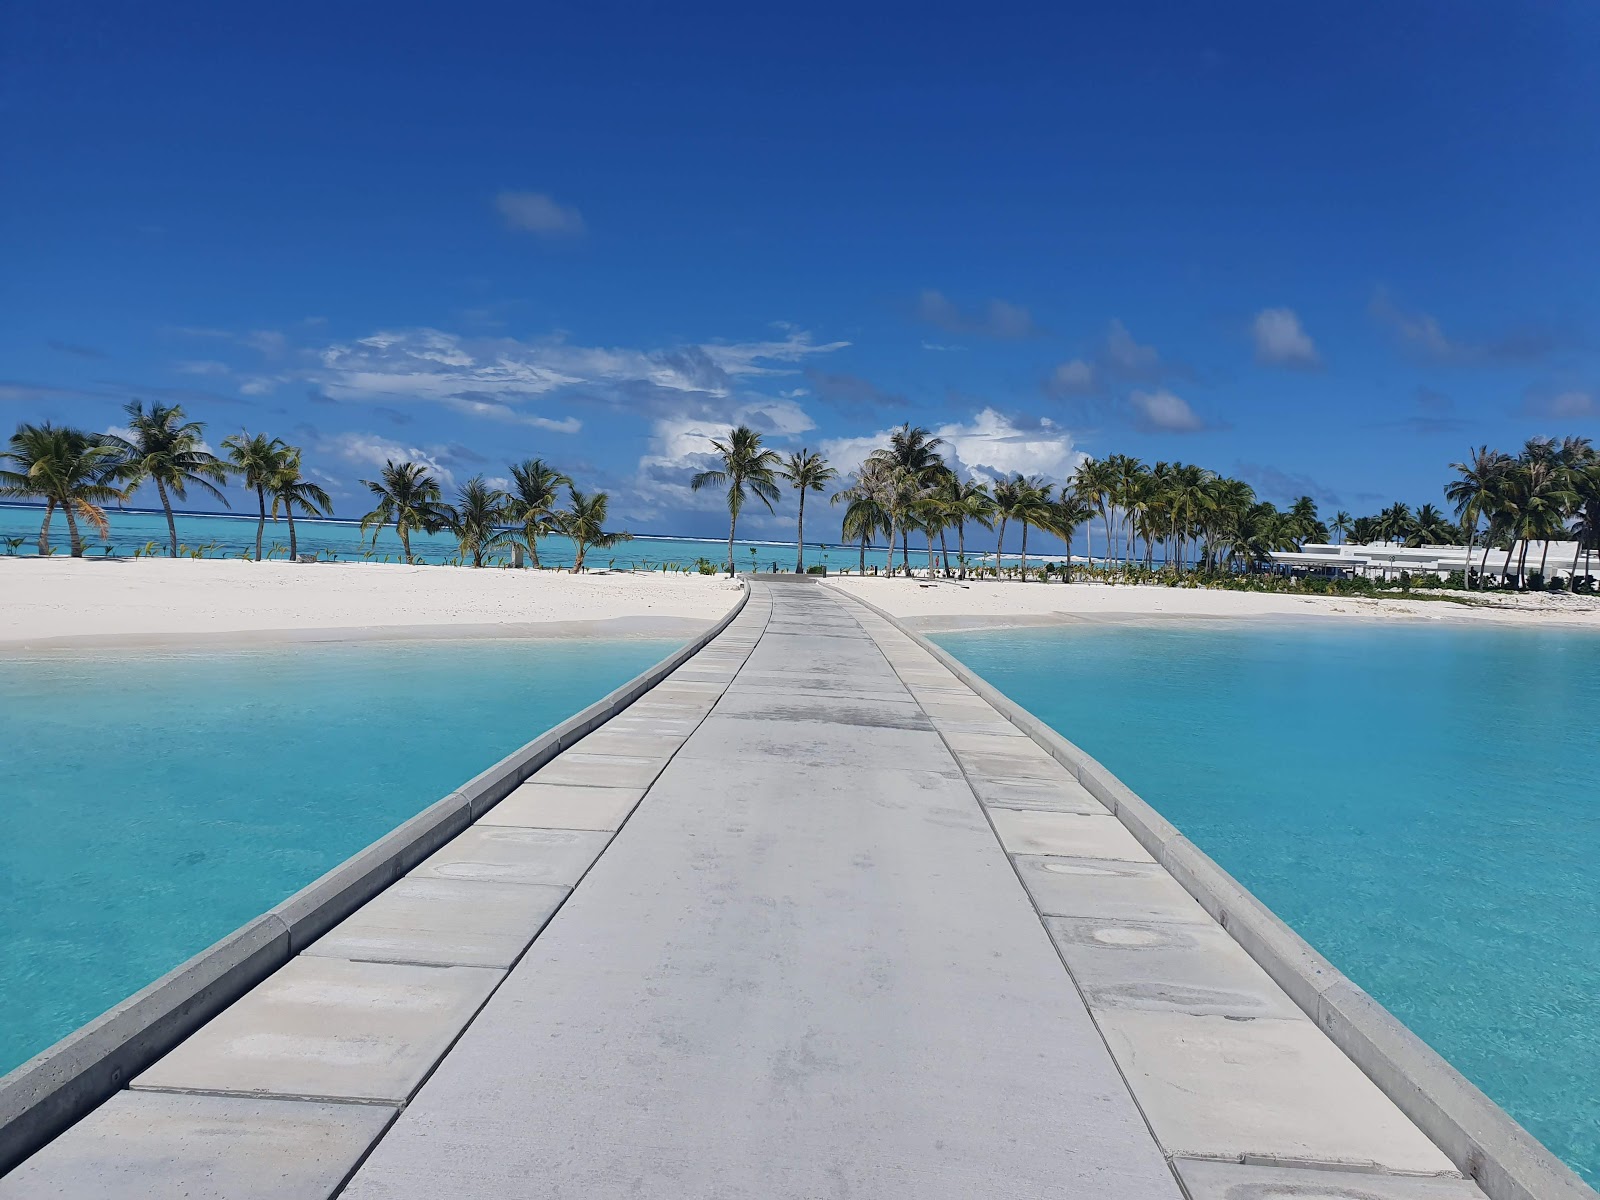 Foto de Riu Resort Beach - lugar popular entre os apreciadores de relaxamento